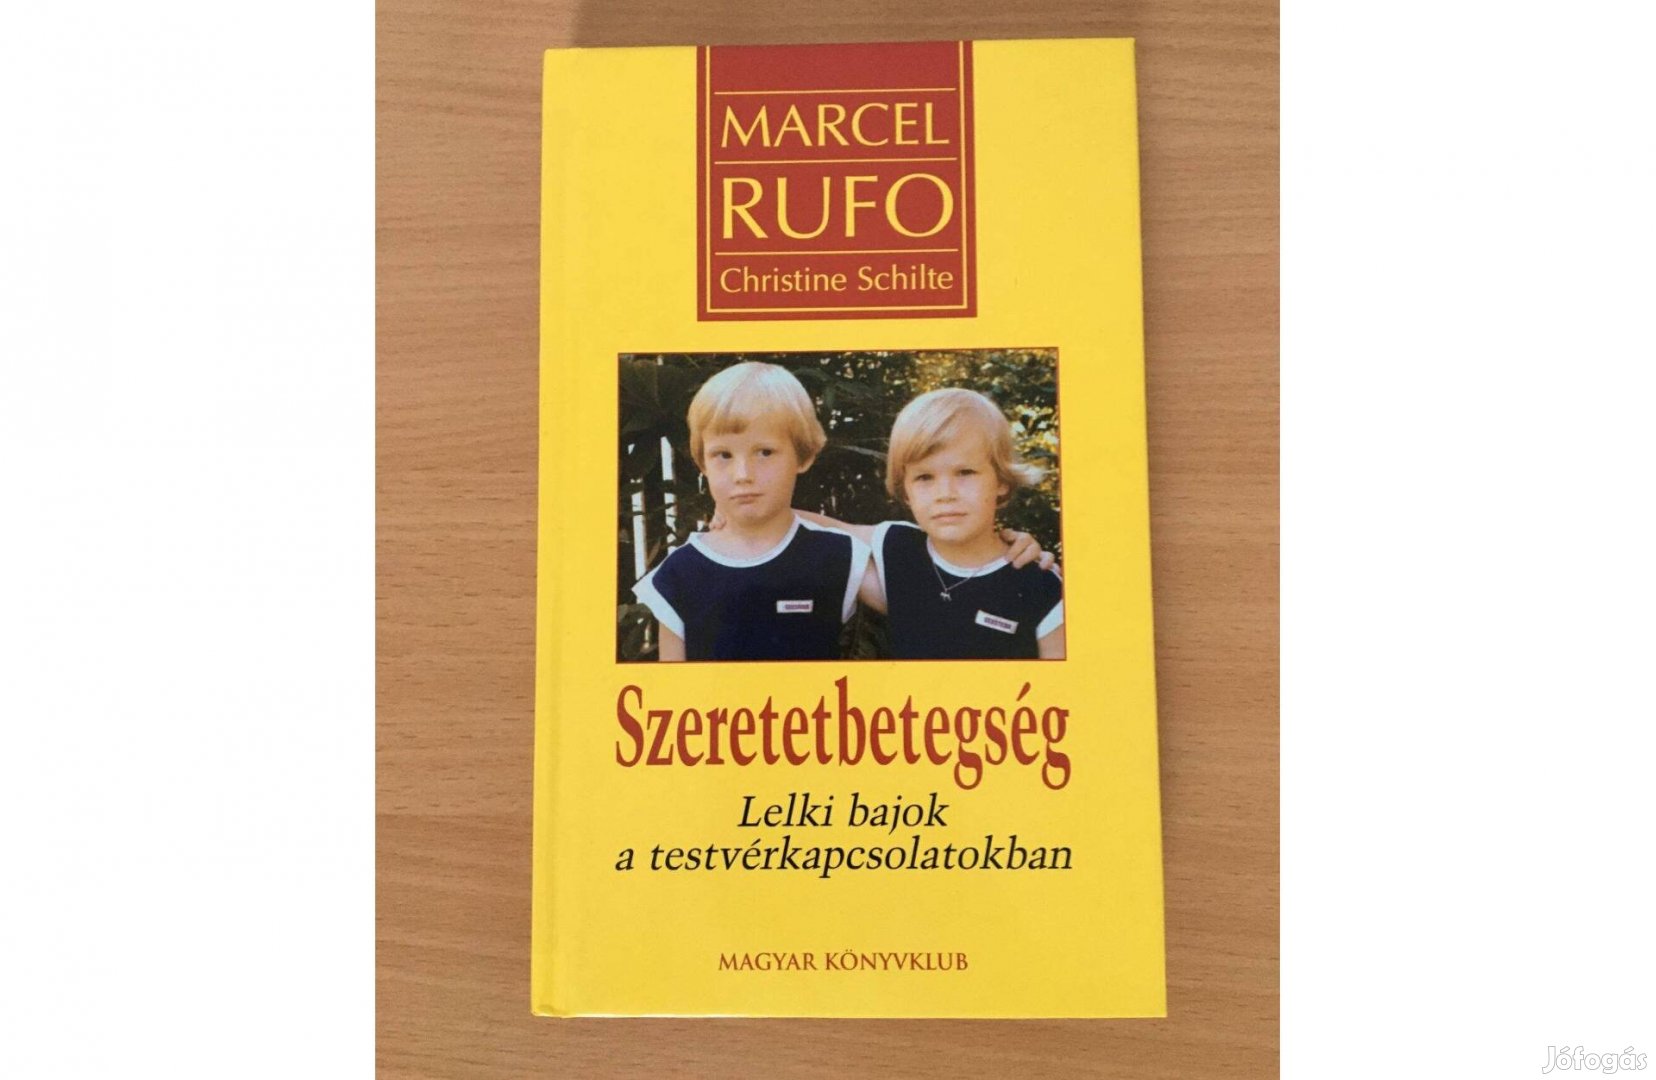 Marcel Rufo Christine Schilte: Szeretetbetegség c. könyv